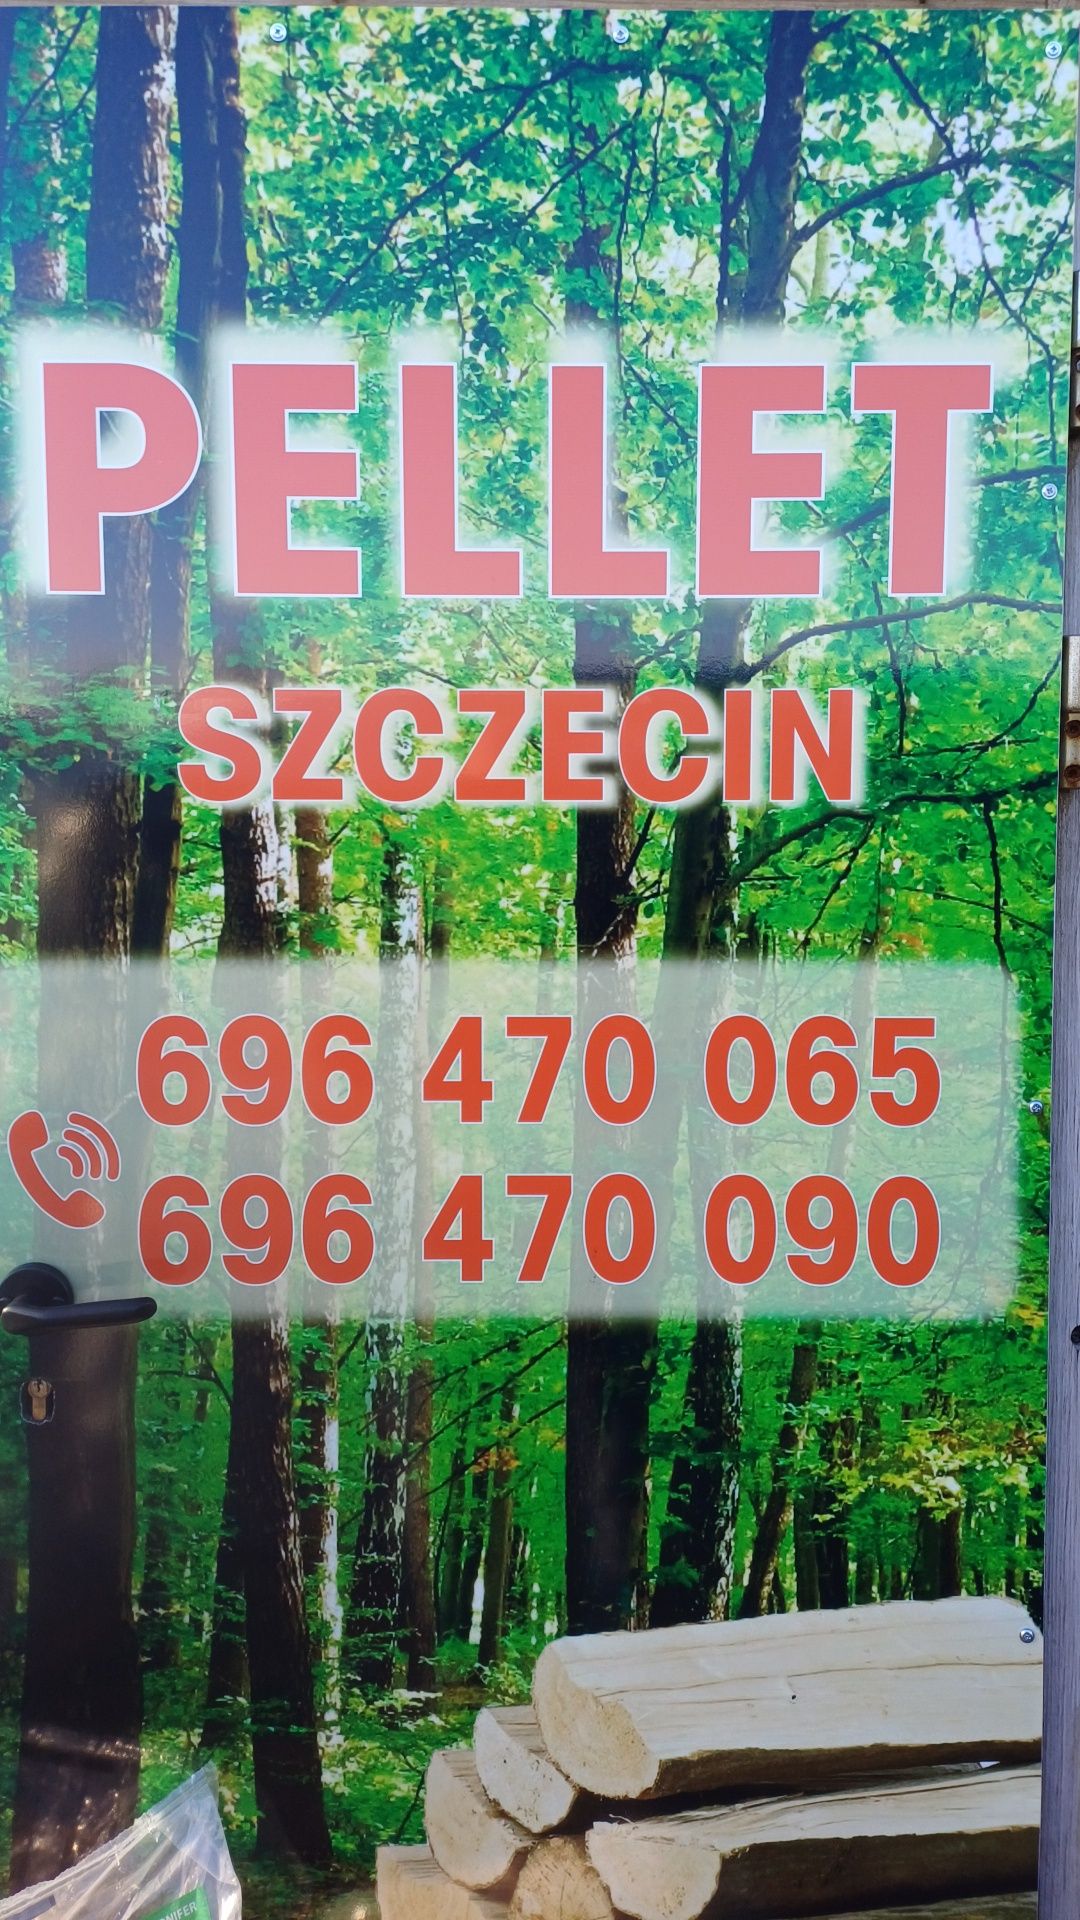 Pellet Feniks najlepszy w Polsce